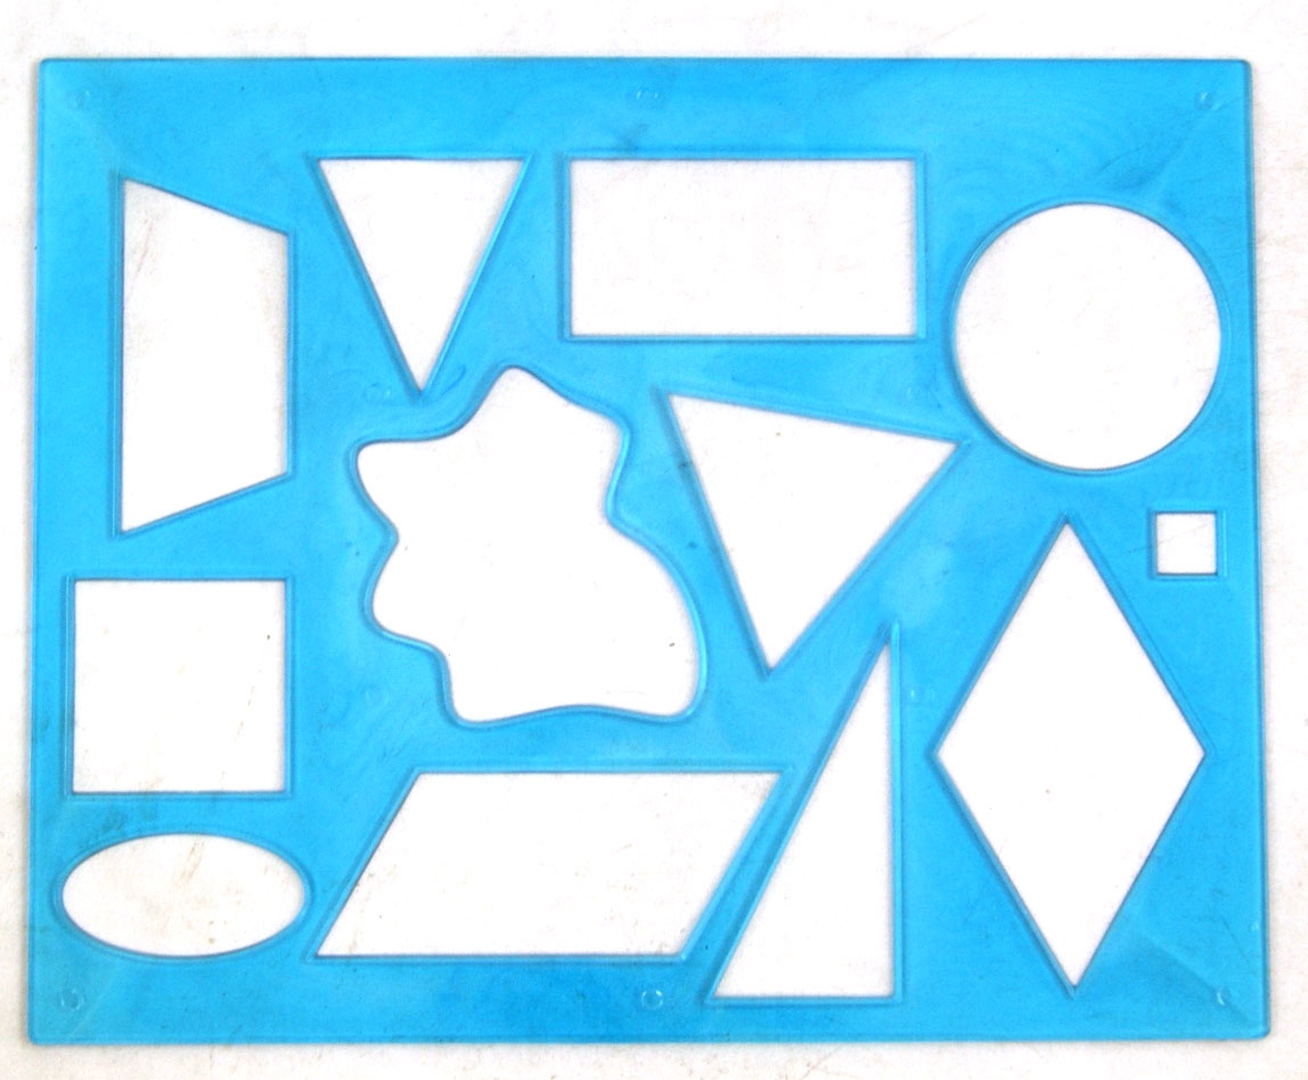 Иллюстрация 1 из 4 для Трафарет геометрических фигур №1, в ассортименте (12С 836-08) | Лабиринт - игрушки. Источник: Лабиринт